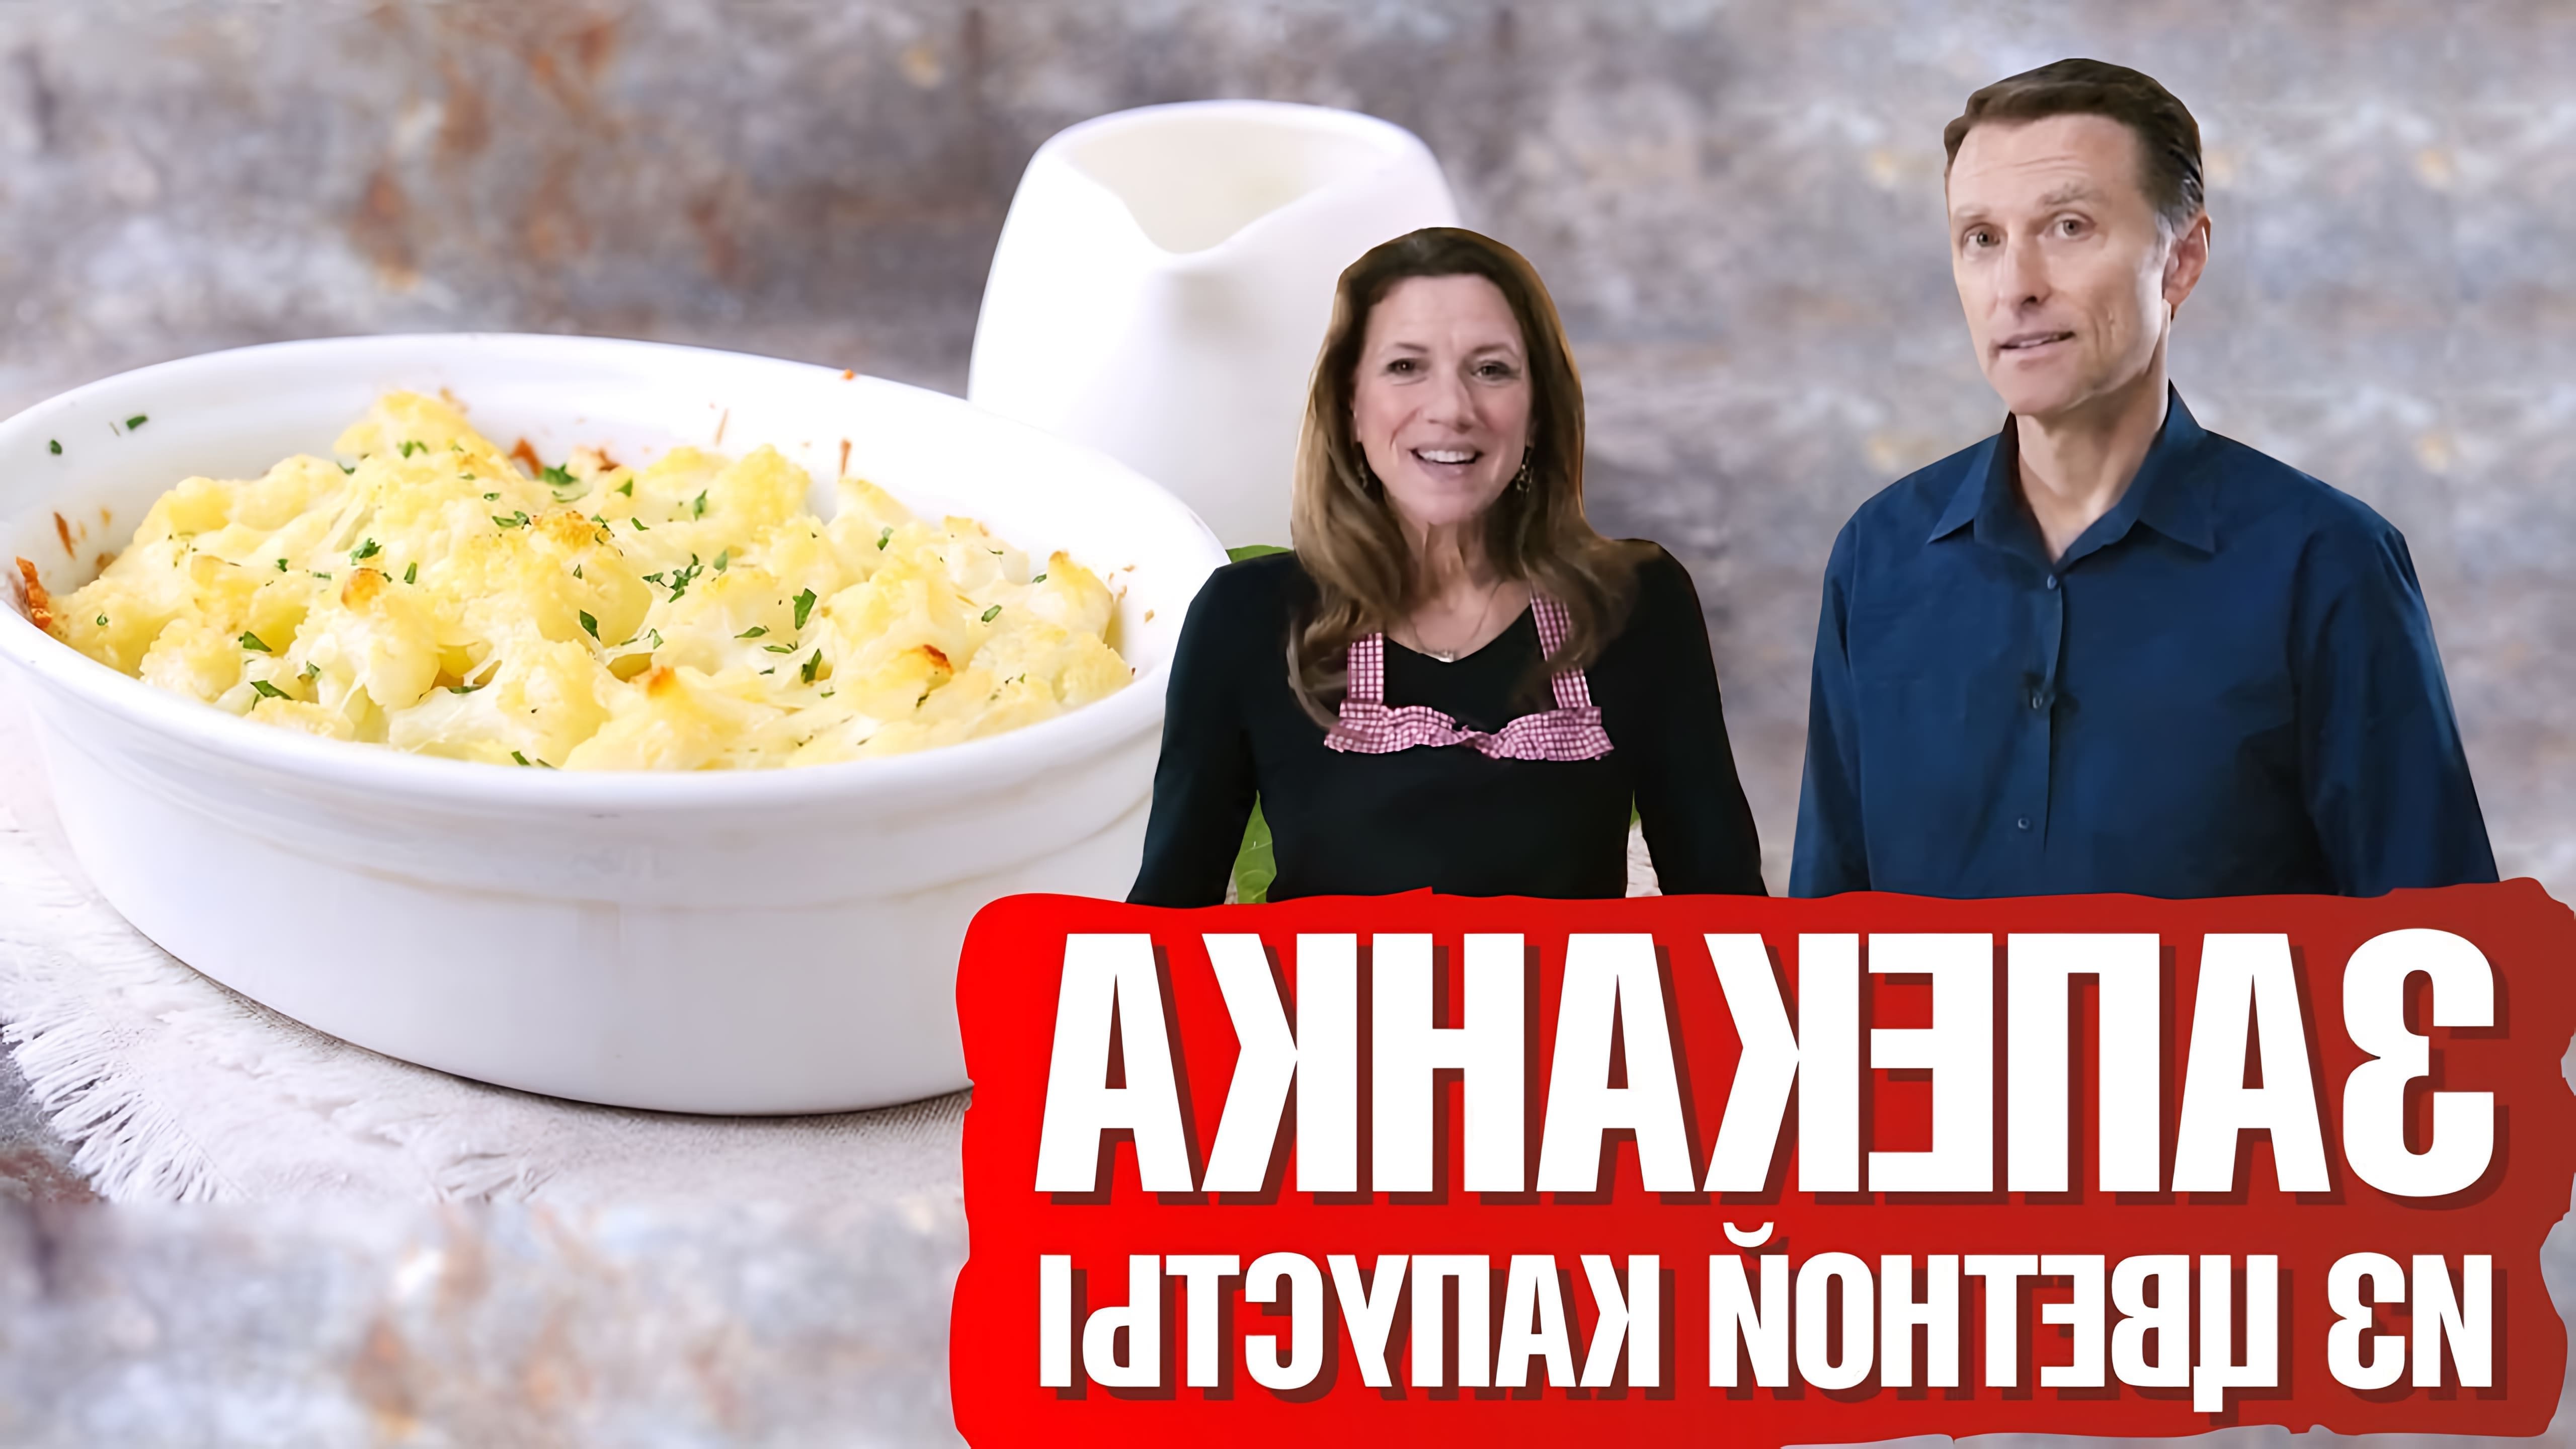 В этом видео Эрик и Карен Берг показывают, как приготовить запеканку из цветной капусты с сыром